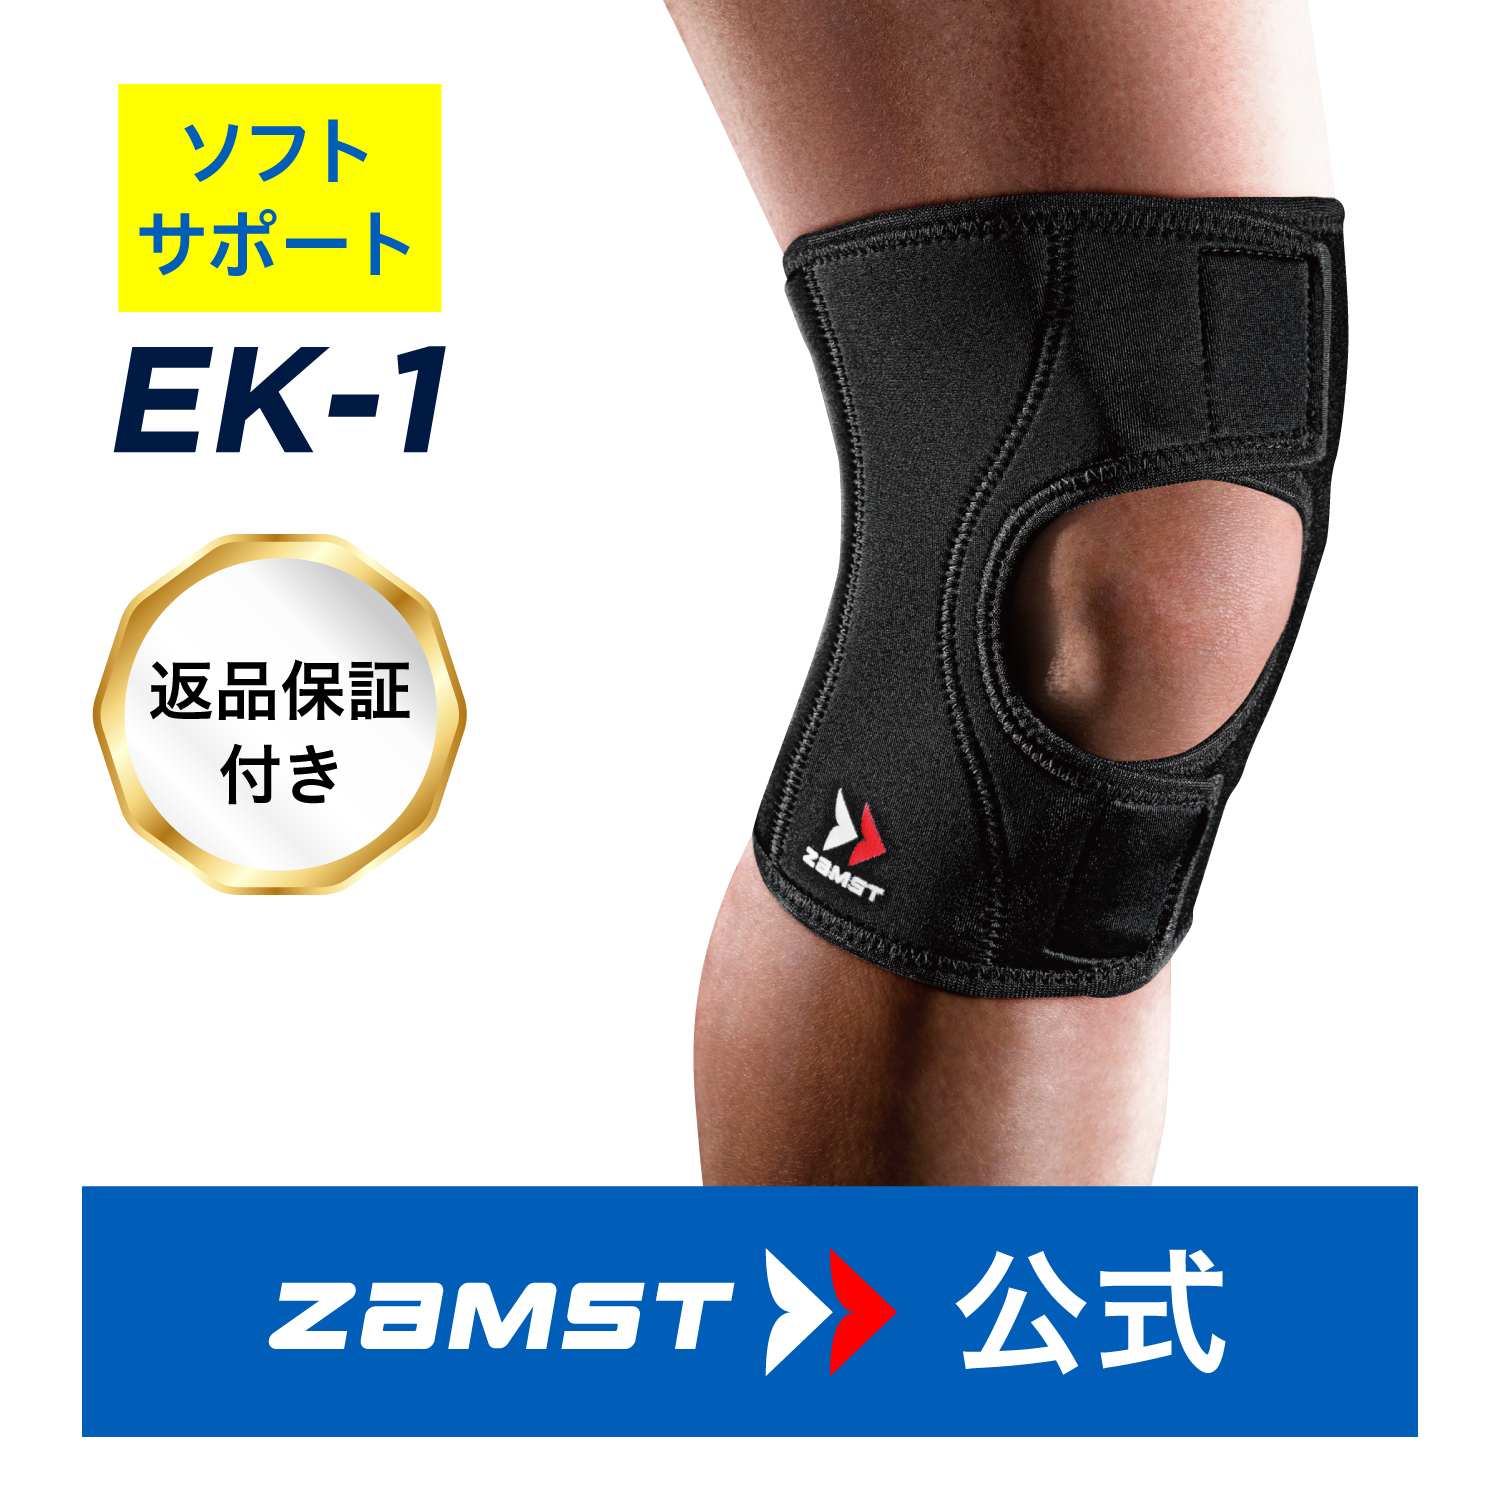 あなたにおすすめの商品 ザムスト RK-1 Plus 膝サポーター ZAMST サポーター 膝用 膝 ひざ用 ランニング マラソン 左右別 